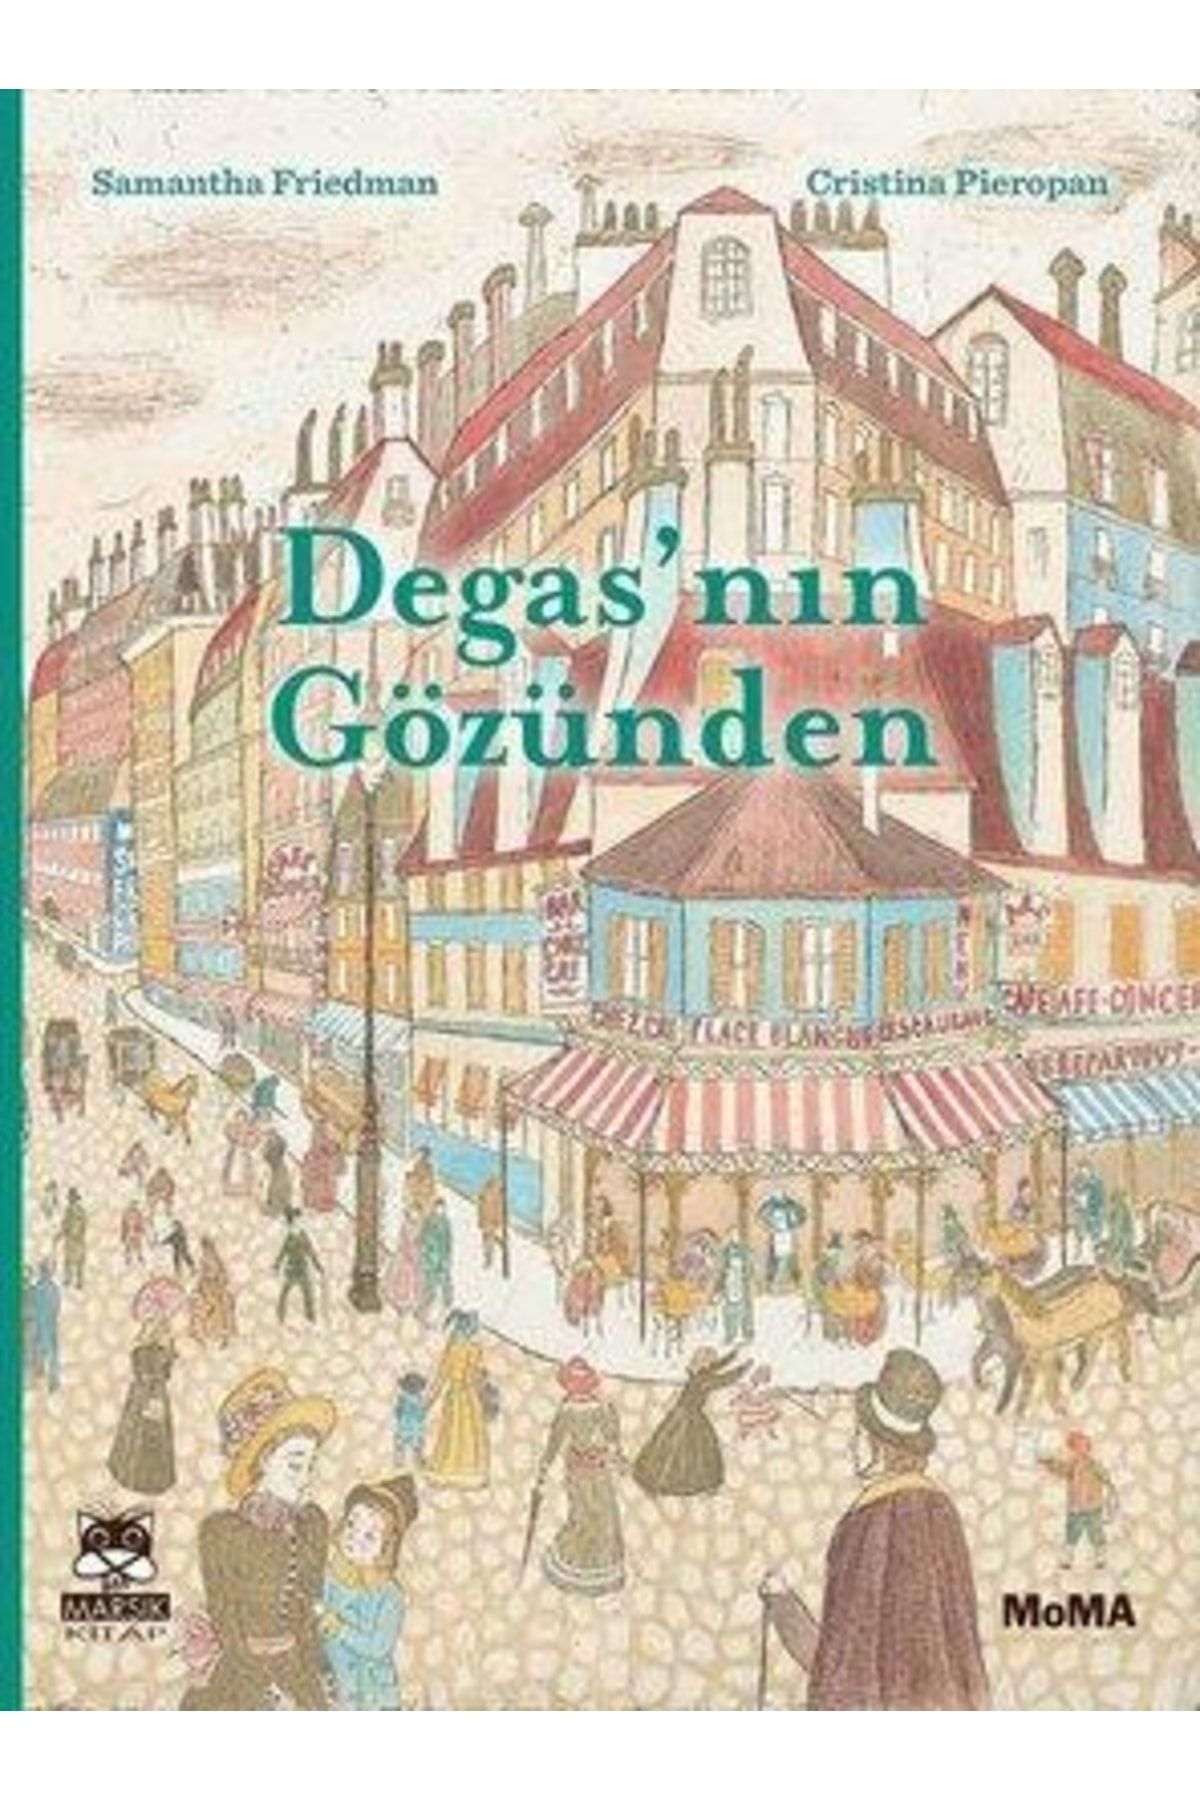 Can Yayınları Degas'nın Gözünden kitabı / Samantha Friedman / Marsık Kitap